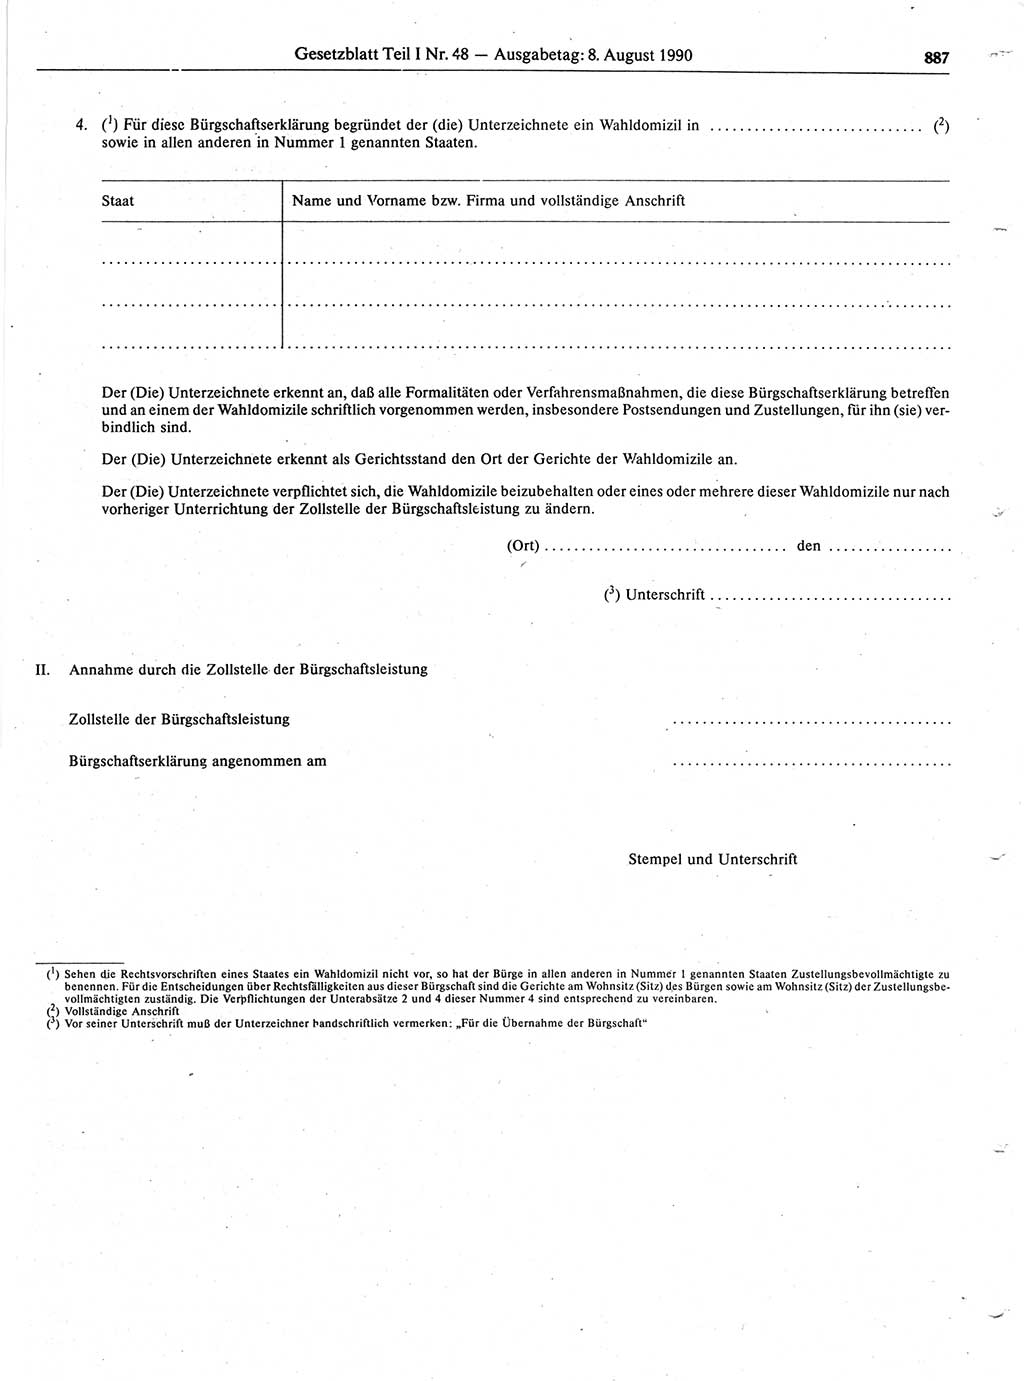 Gesetzblatt (GBl.) der Deutschen Demokratischen Republik (DDR) Teil Ⅰ 1990, Seite 887 (GBl. DDR Ⅰ 1990, S. 887)